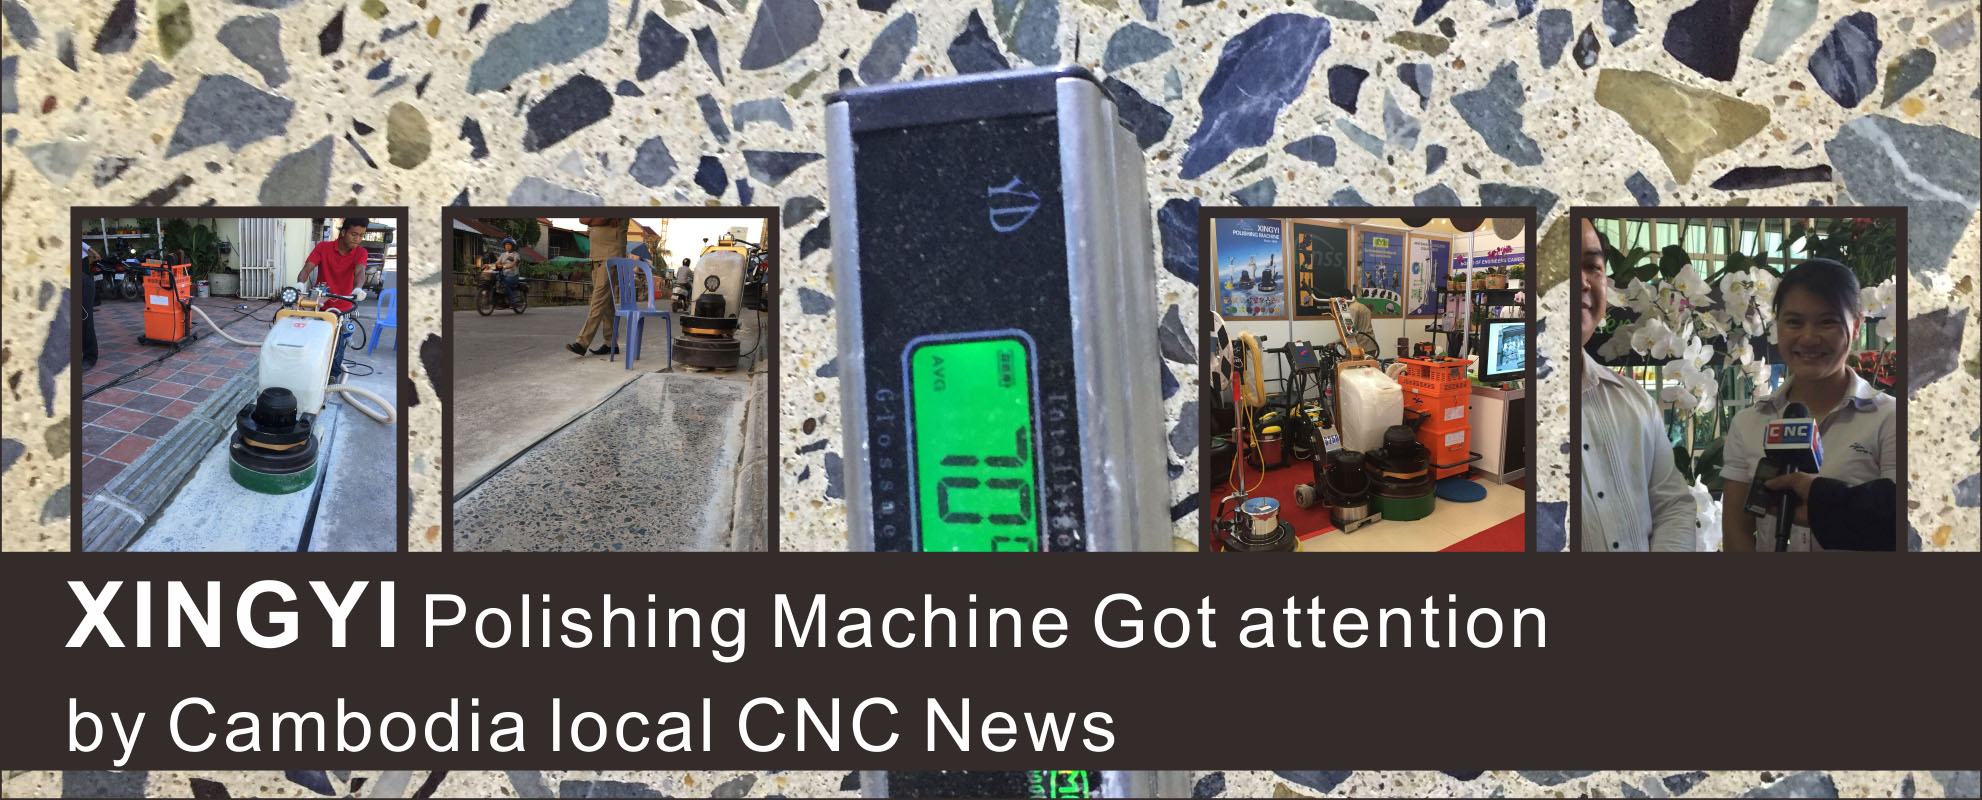 캄보디아 현지 CNC 뉴스 XINGYI 연마 기계 있어 관심.